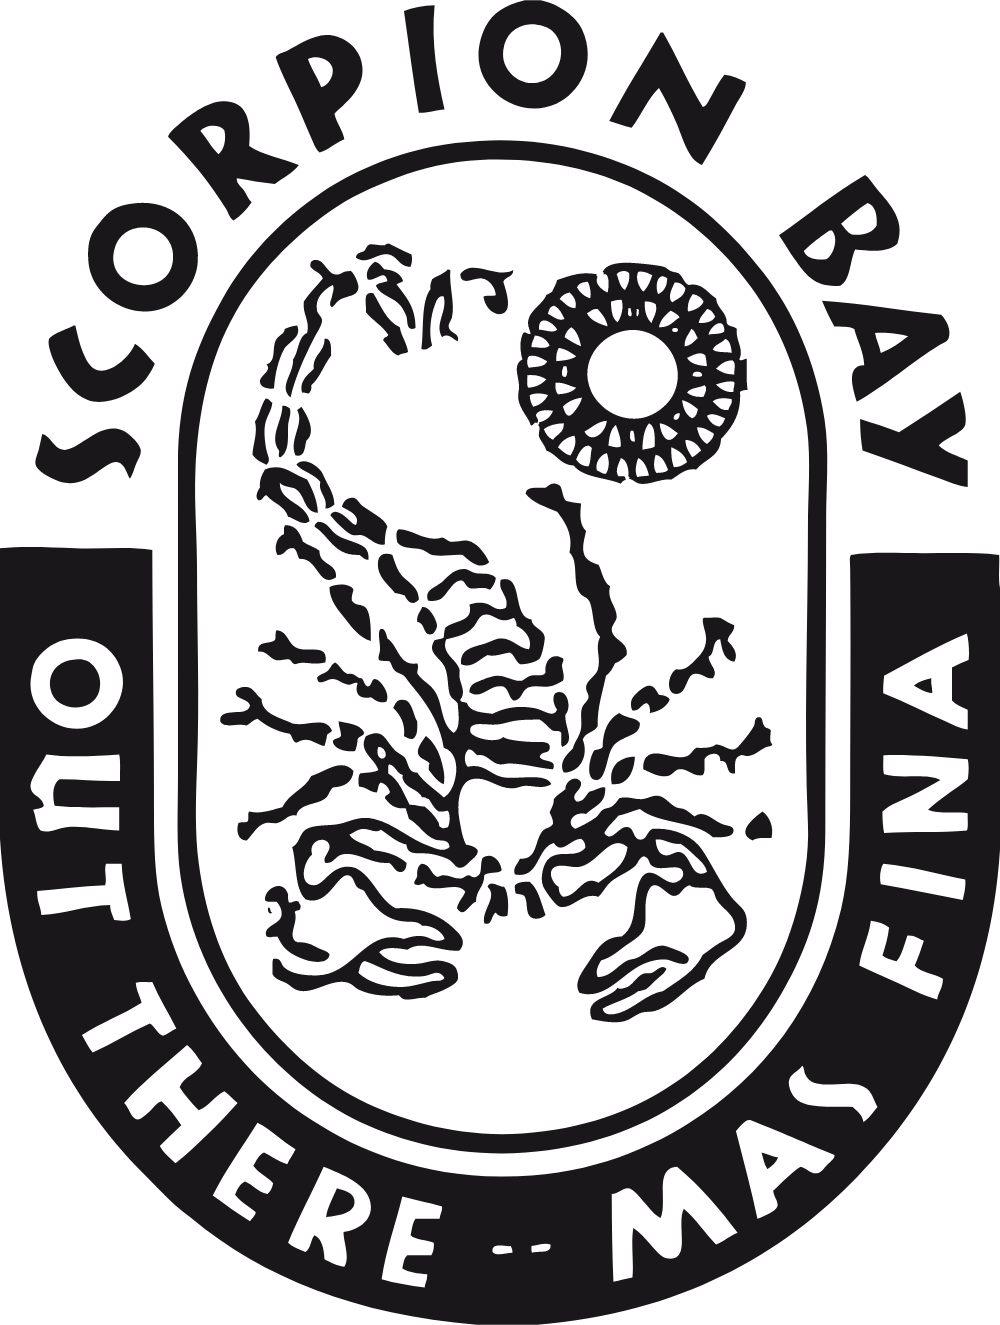 Scorpion Bay Logo Logos